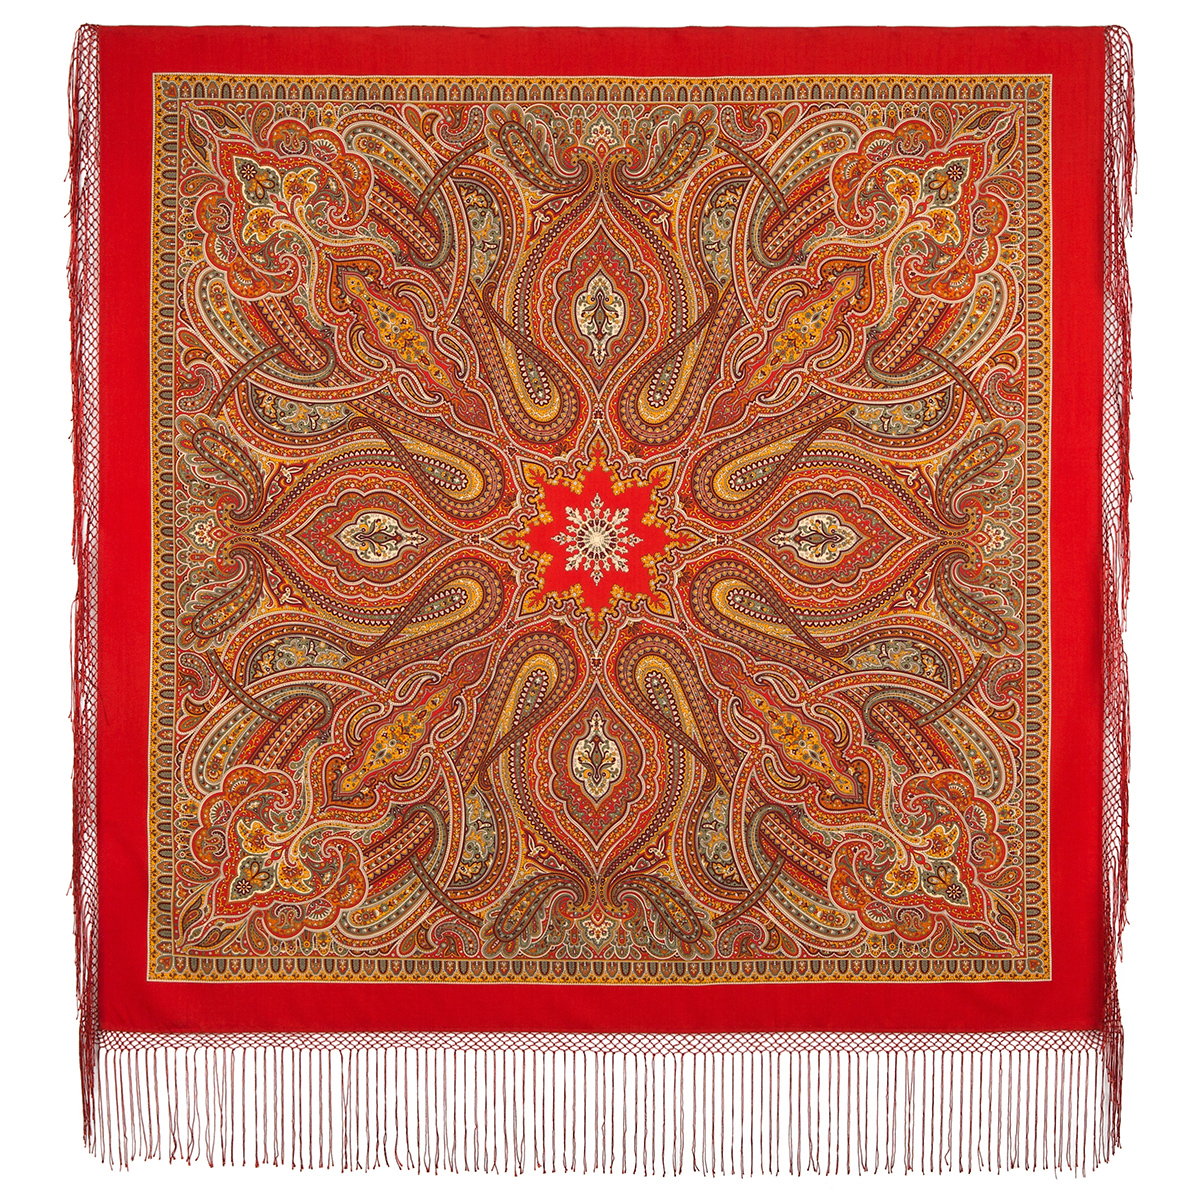 Платок женский Павловопосадский платок 1539 красный, 148х148 см